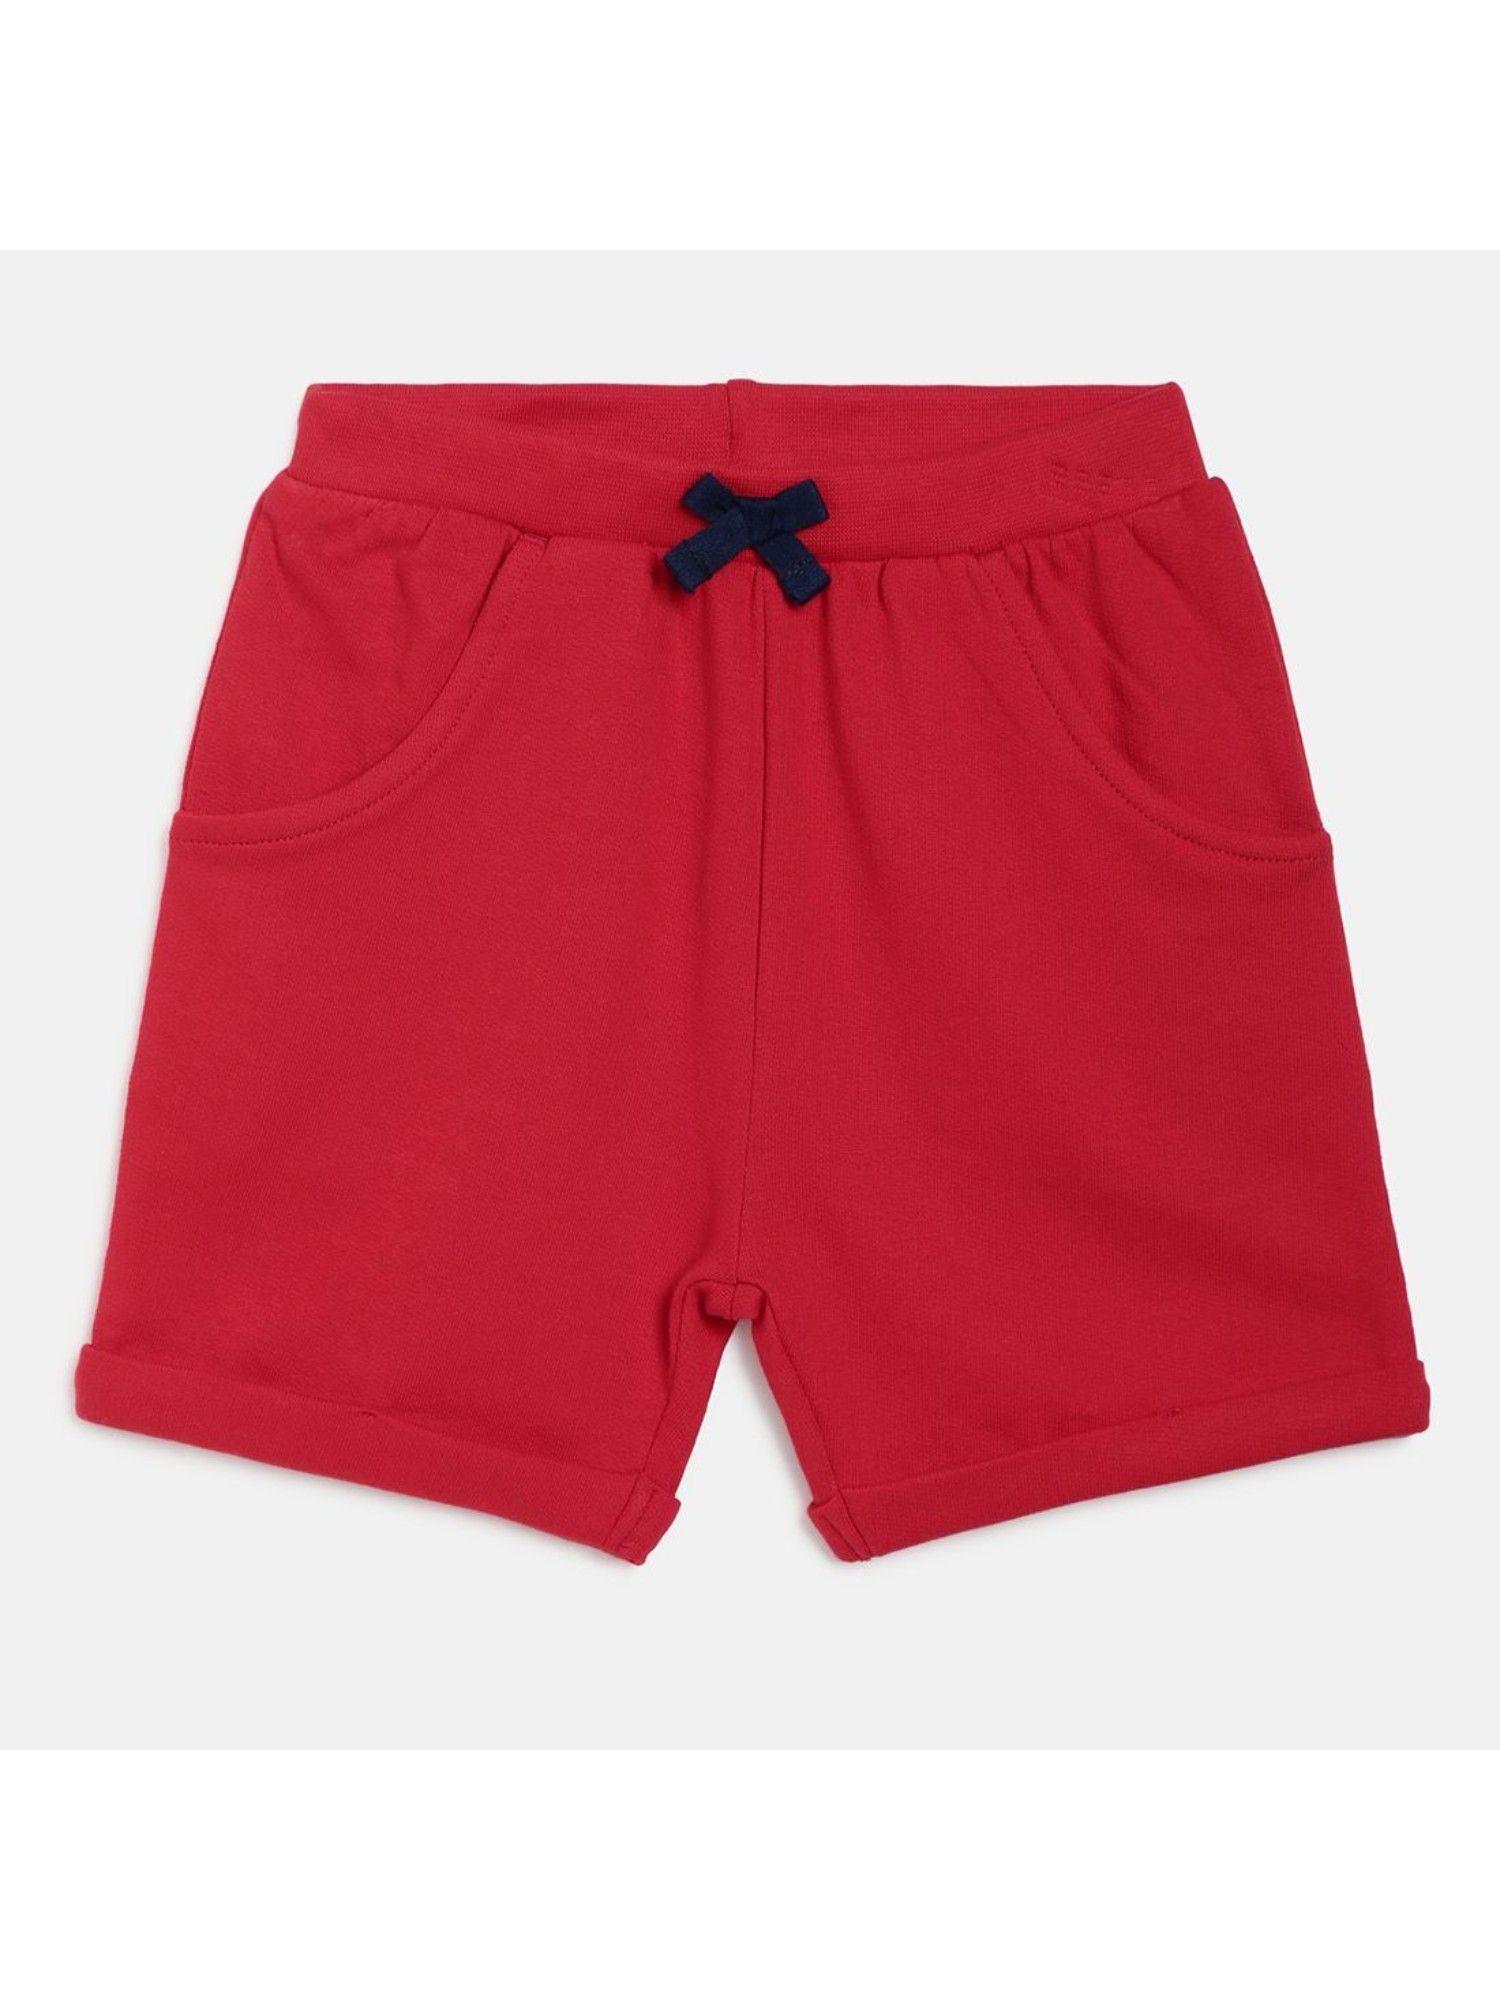 kids girls red shorts